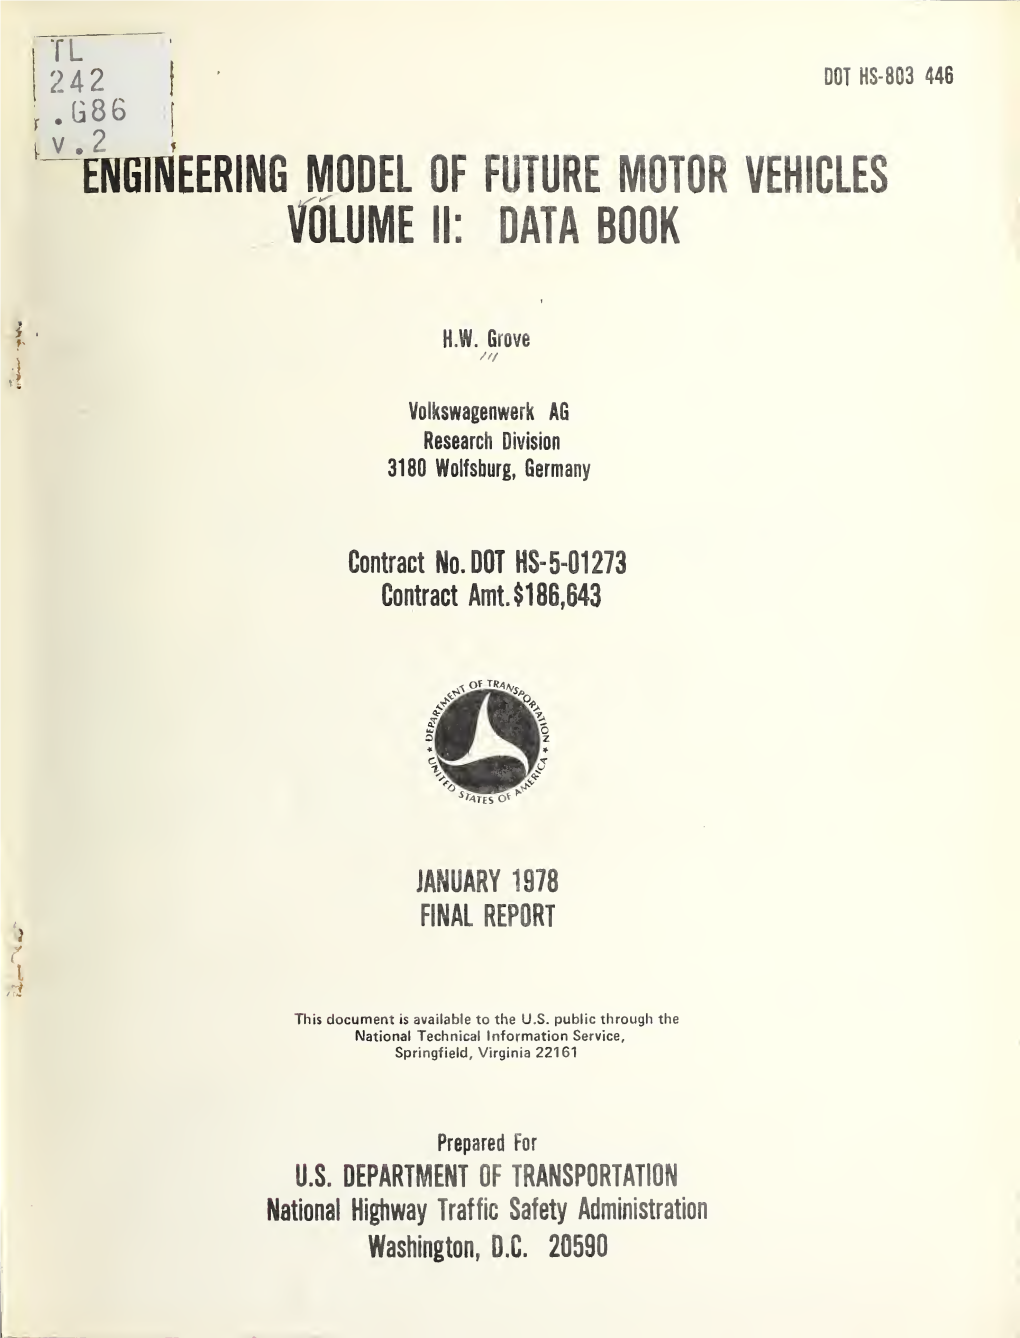 Engineering Model of Future Motor Vehicles 6 Performing Orgoniiotion Code Volume II: Data Book